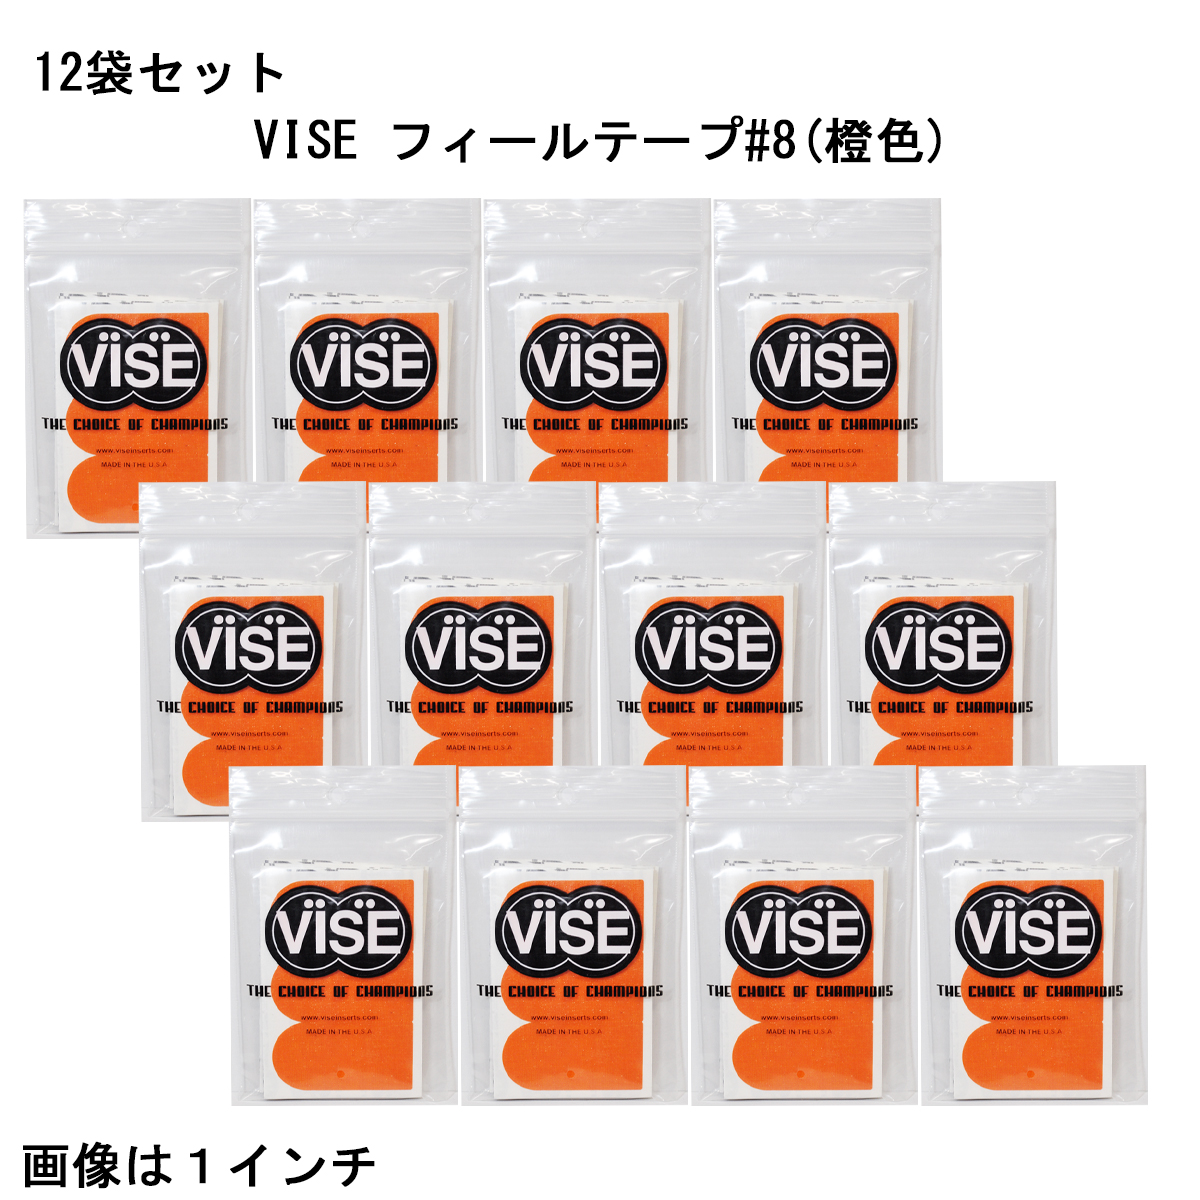 【12袋セット】VISE フィールテープ#8(橙色)